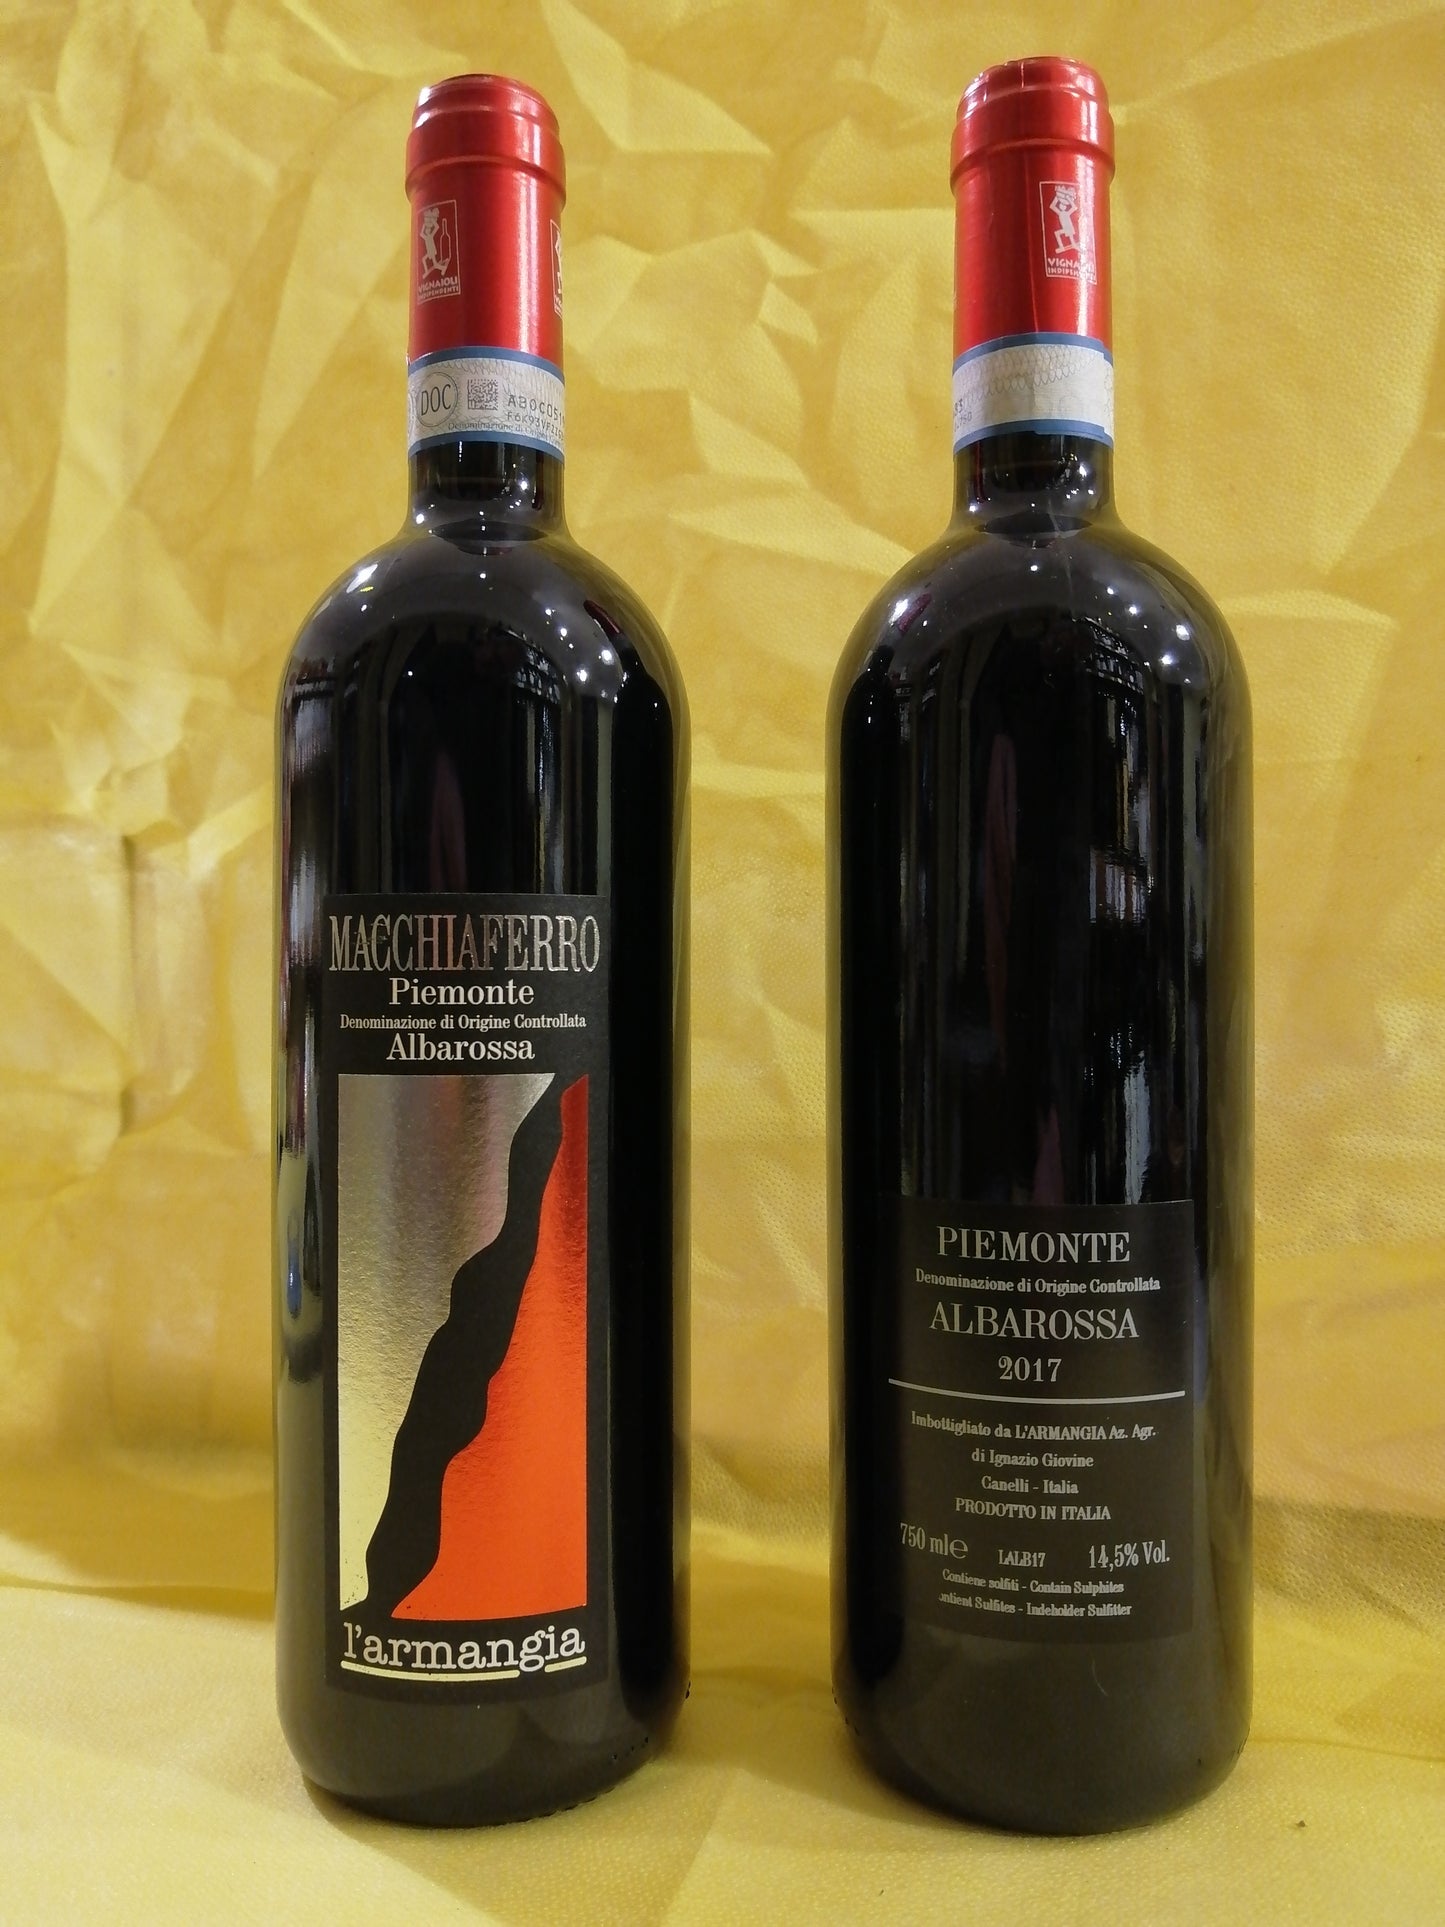 Albarossa Piemonte DOC "Macchiaferro" - L'Armangia